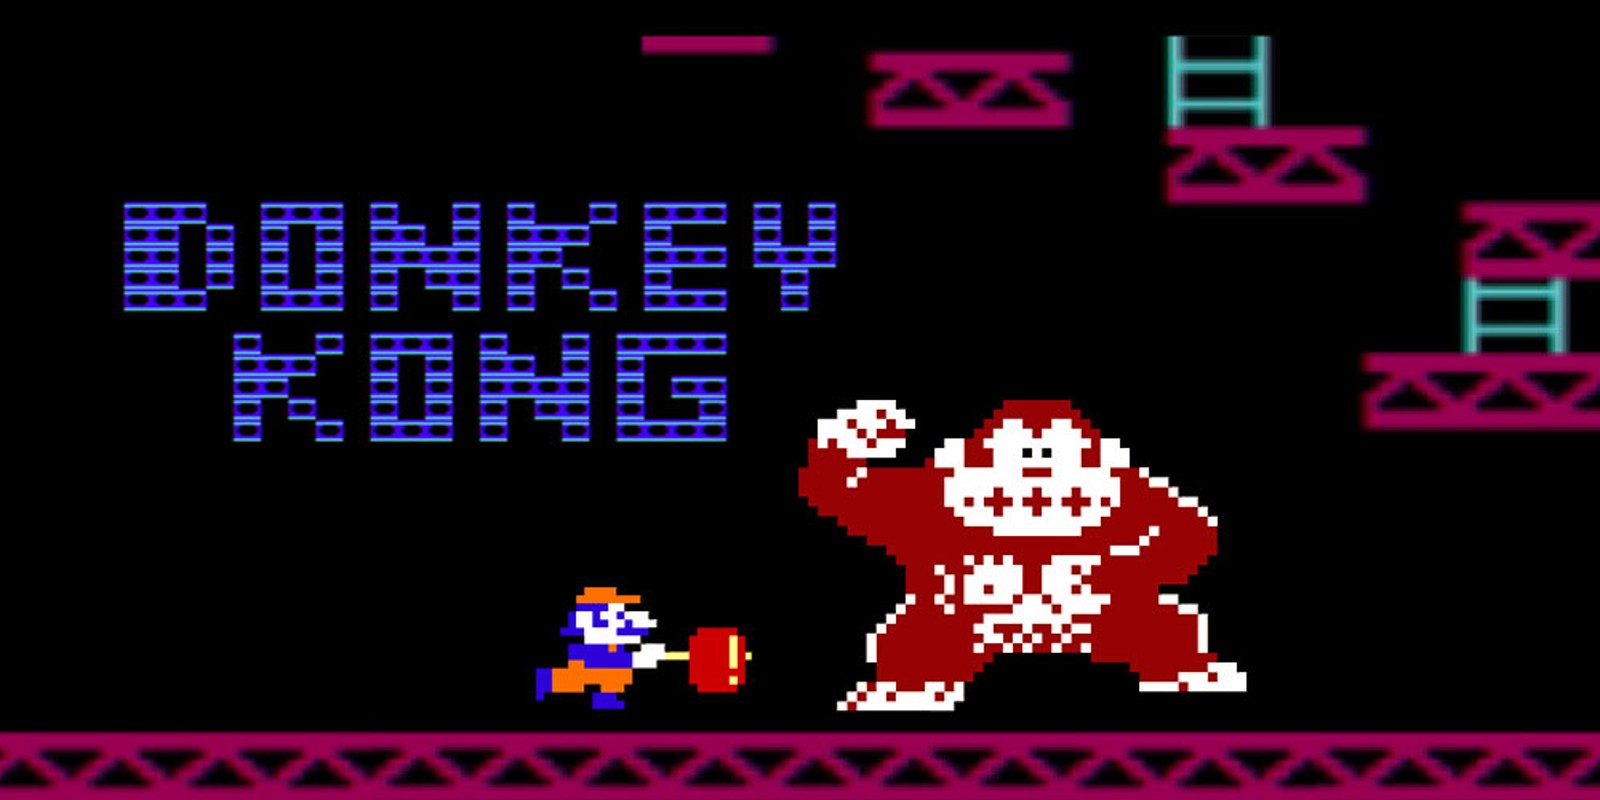 Résultat de recherche d'images pour "donkey kong arcade"